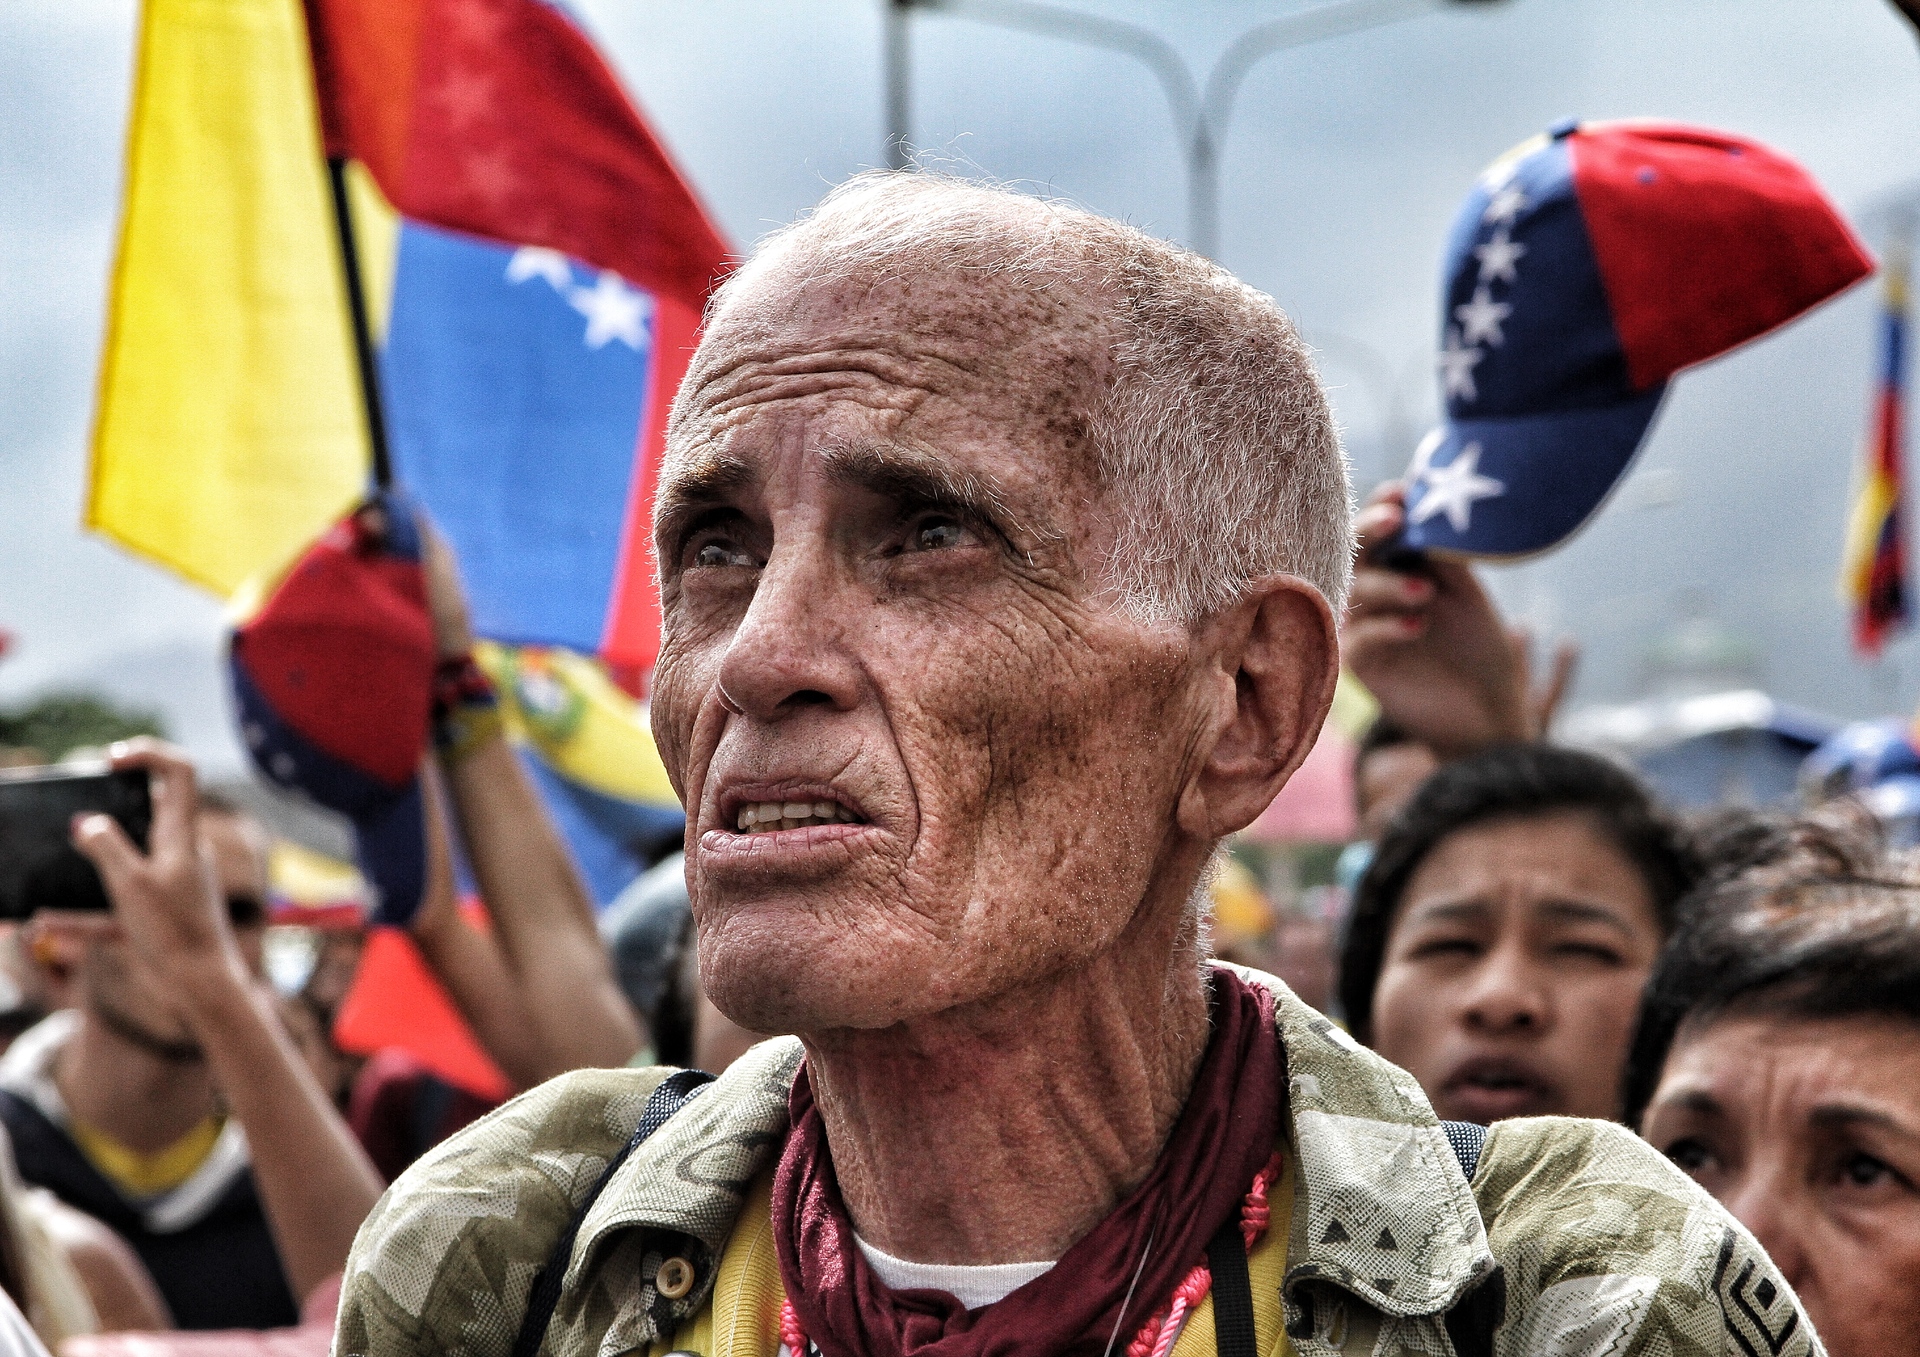 https://www.foap.com/photos/abuelo-en-resistencia-este-2017-en-caracas-venezuela-muchos-venezolanos-han-salido-a-protestar-por-la-crisis-que-vive-actualmente-en-el-pais-van-92-dias-de-protestas-contra-el-gobierno-de-nicolas-maduro-las-fuerzas-del-estado-han-dejado-decenas-de-5e869b91-a5b2-4f08-9035-2736d019f999